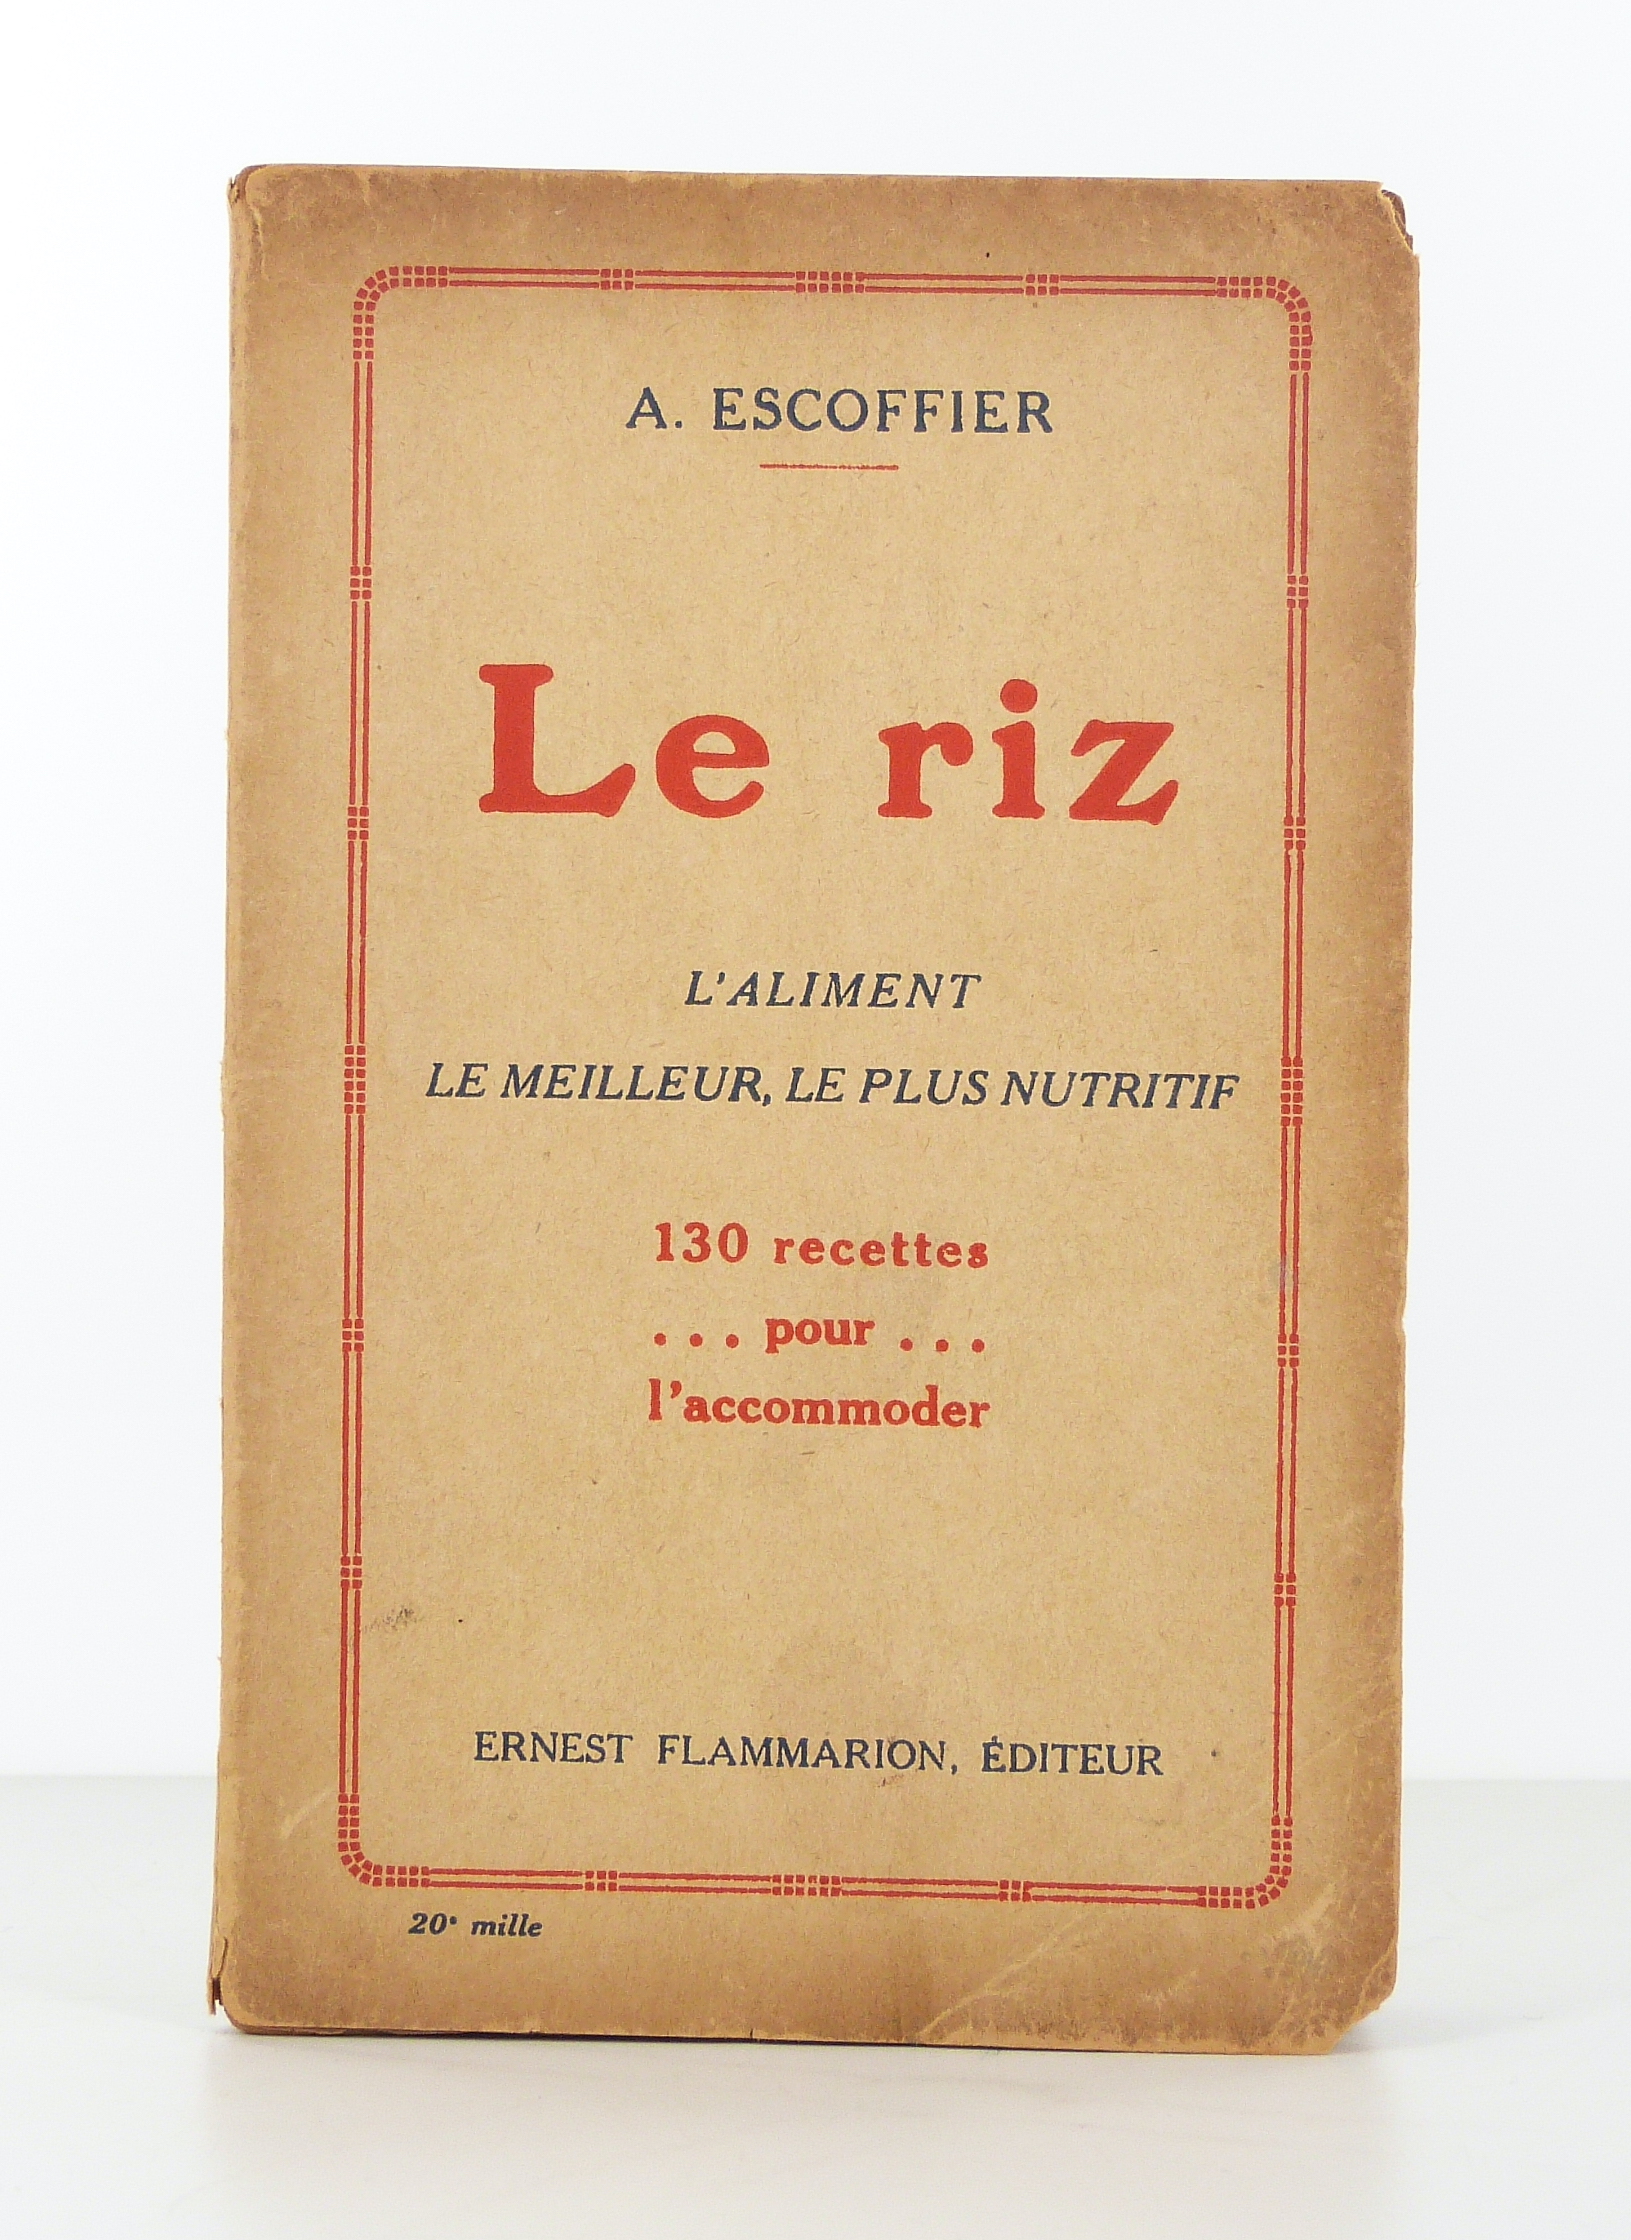 ESCOFFIER (A.) - Le riz, l